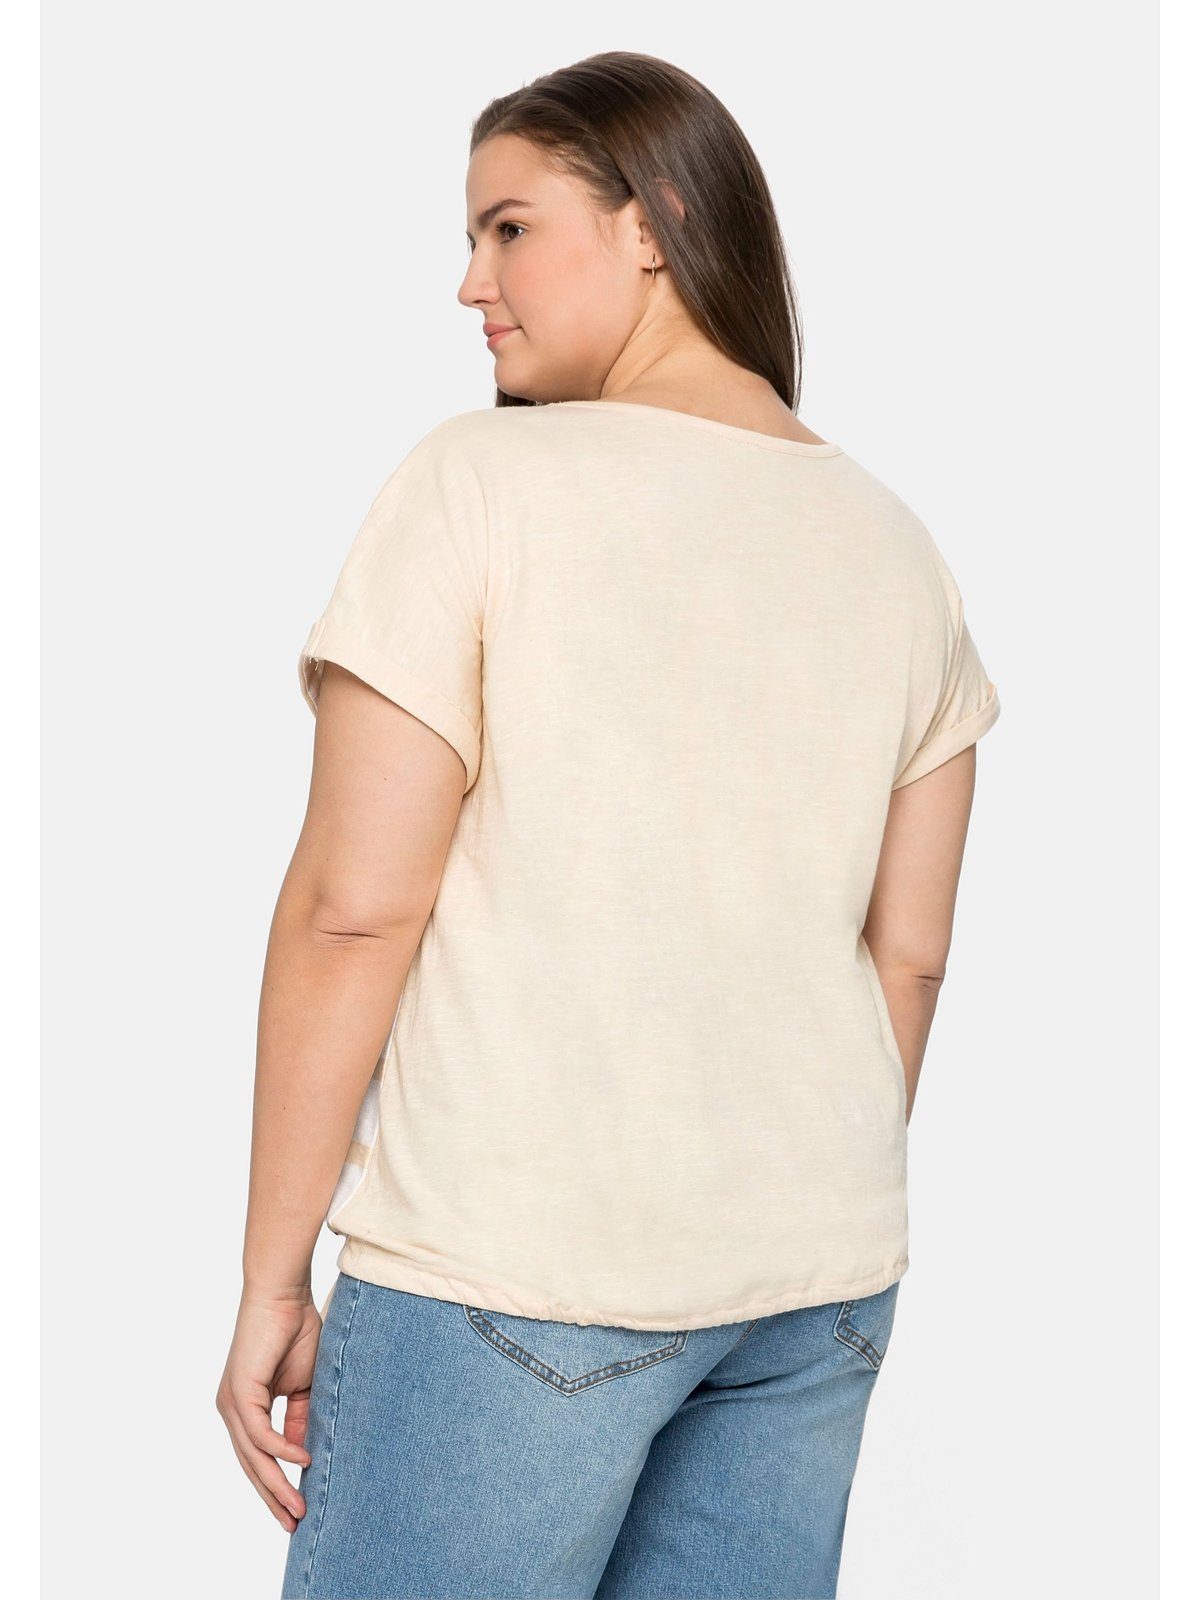 Sheego T-Shirt Große mit Tunnelzug Streifenprint Größen vorn natur und